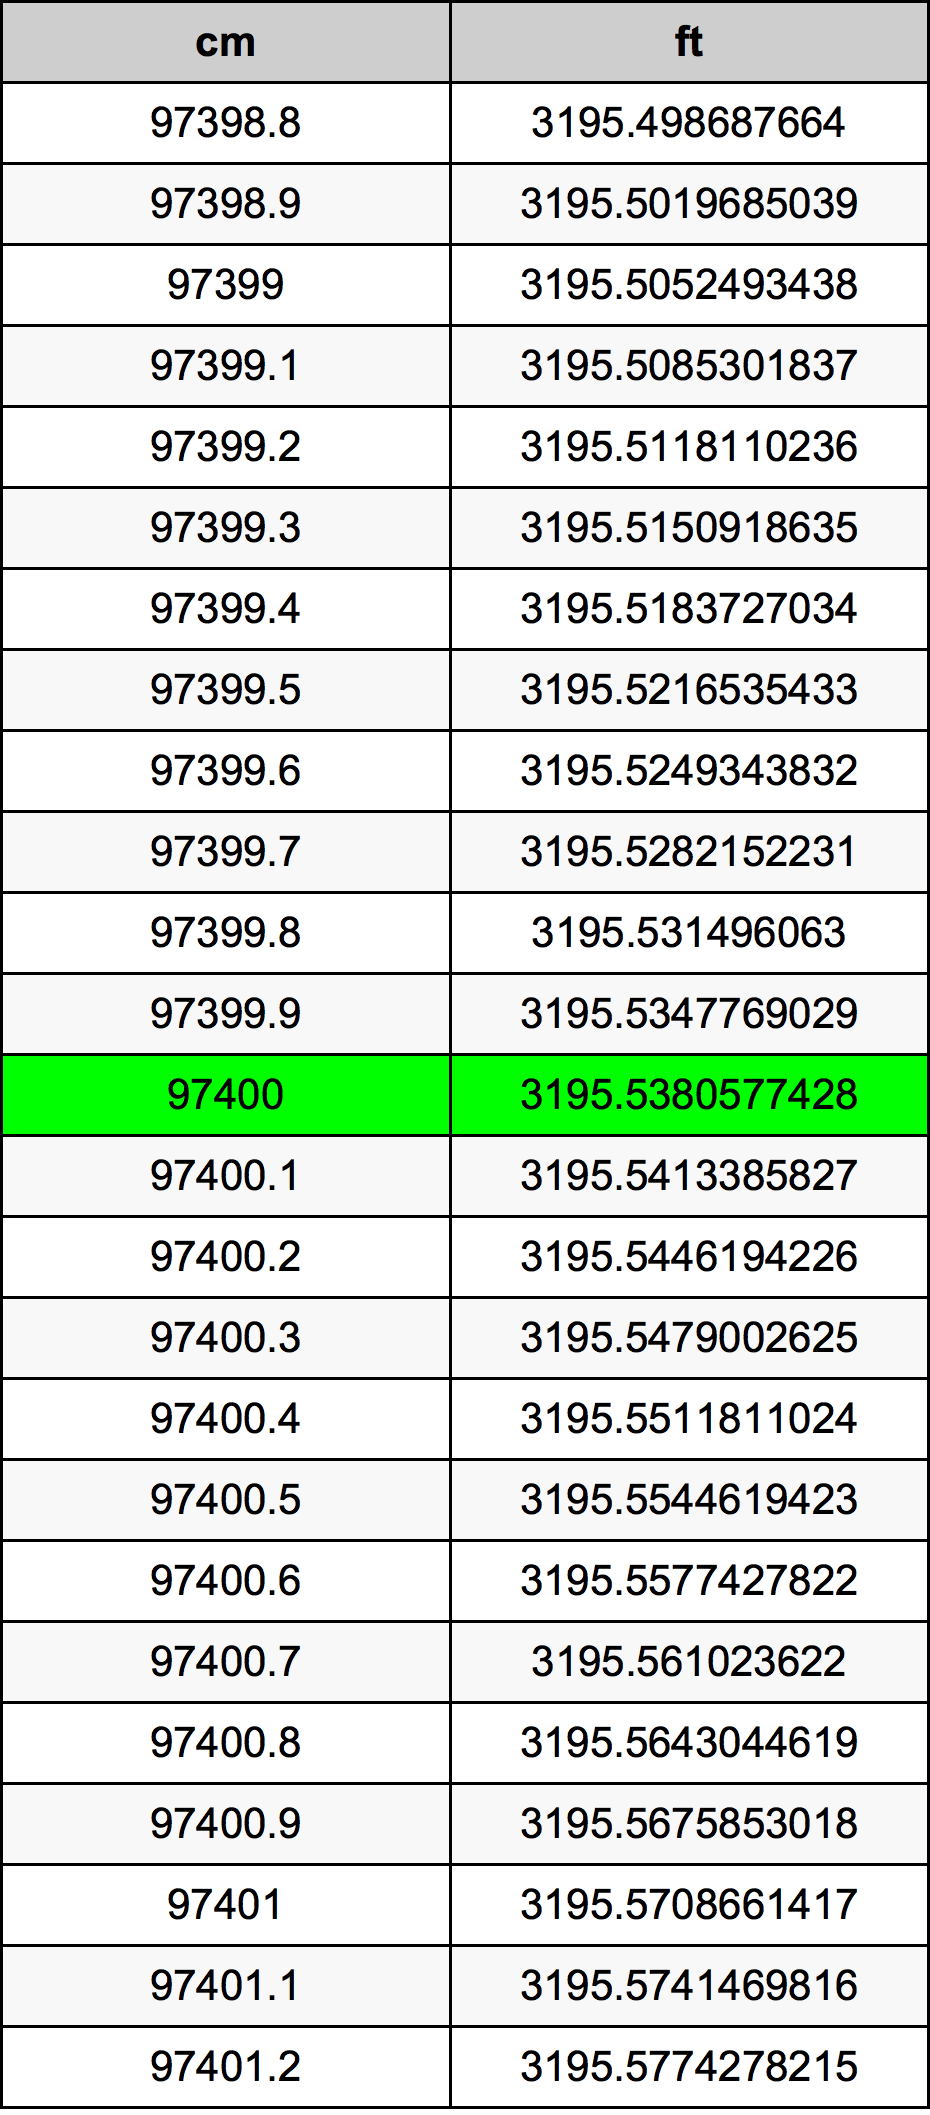 97400 Centiméter átszámítási táblázat